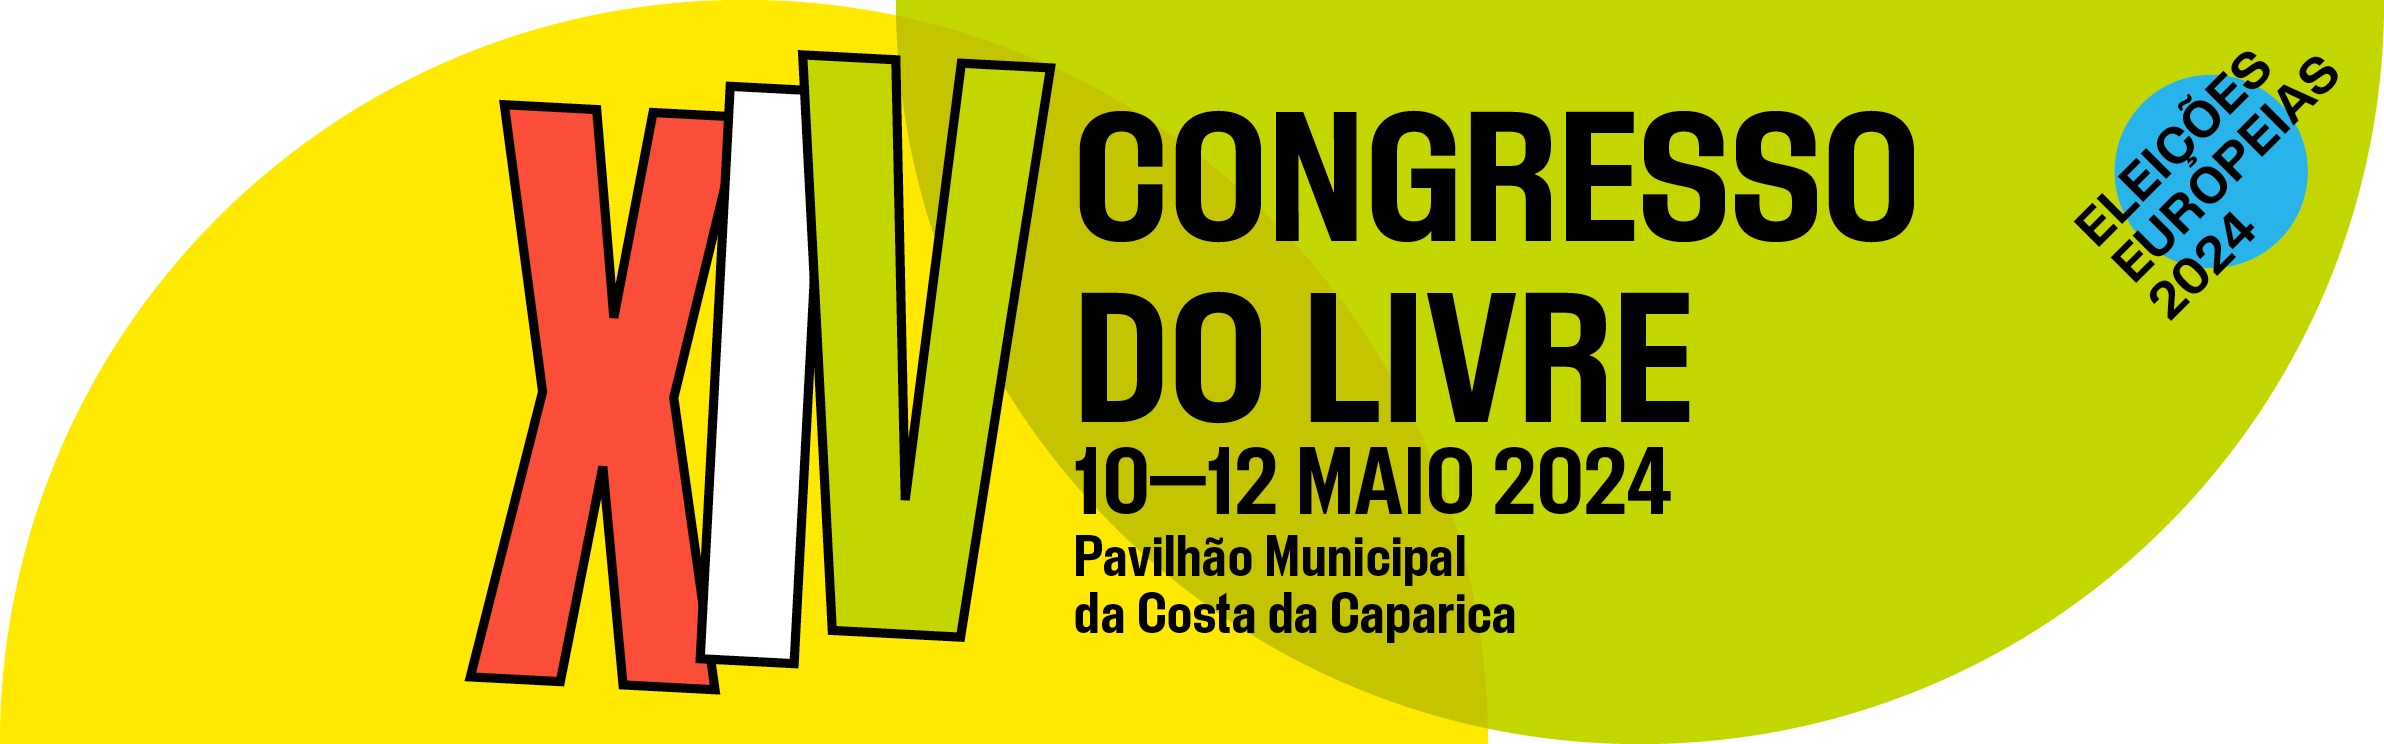 XIV Congresso do LIVRE 10—12 Maio 2024 Pavilhão Municipal da Costa da Caparica